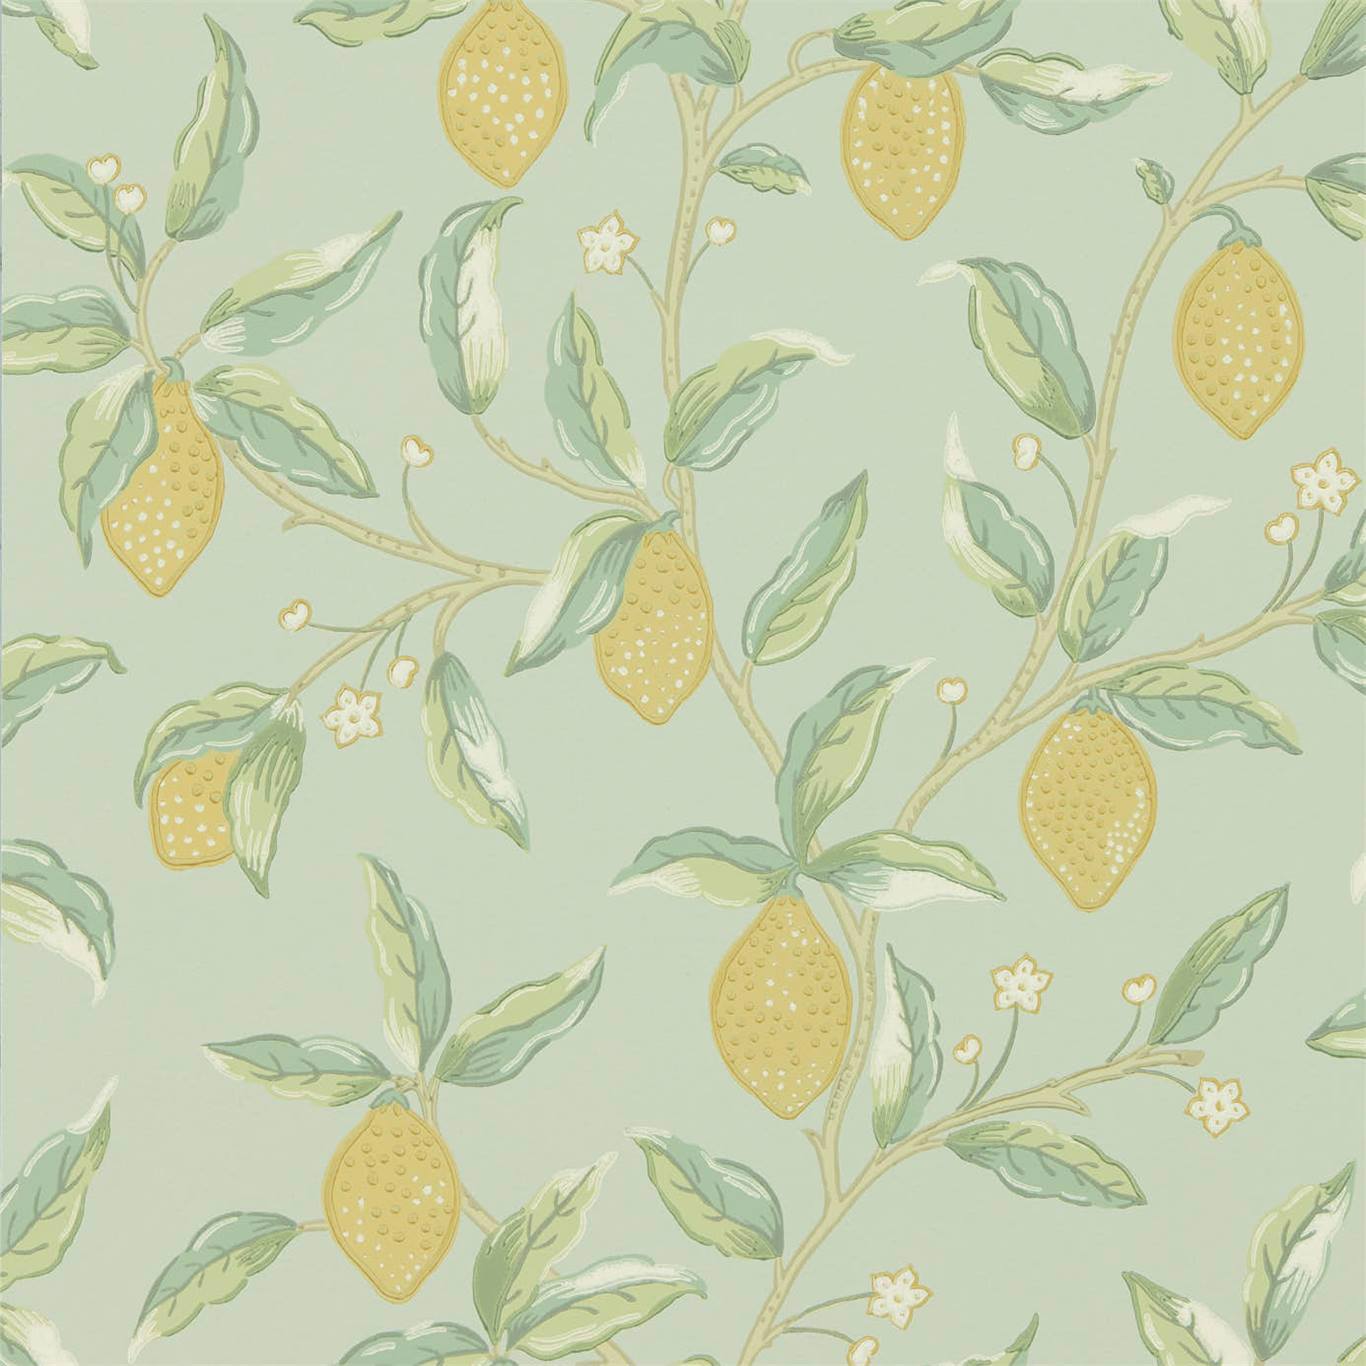 Lemon Tree Wallpaper DMSW216673 by Morris & Co